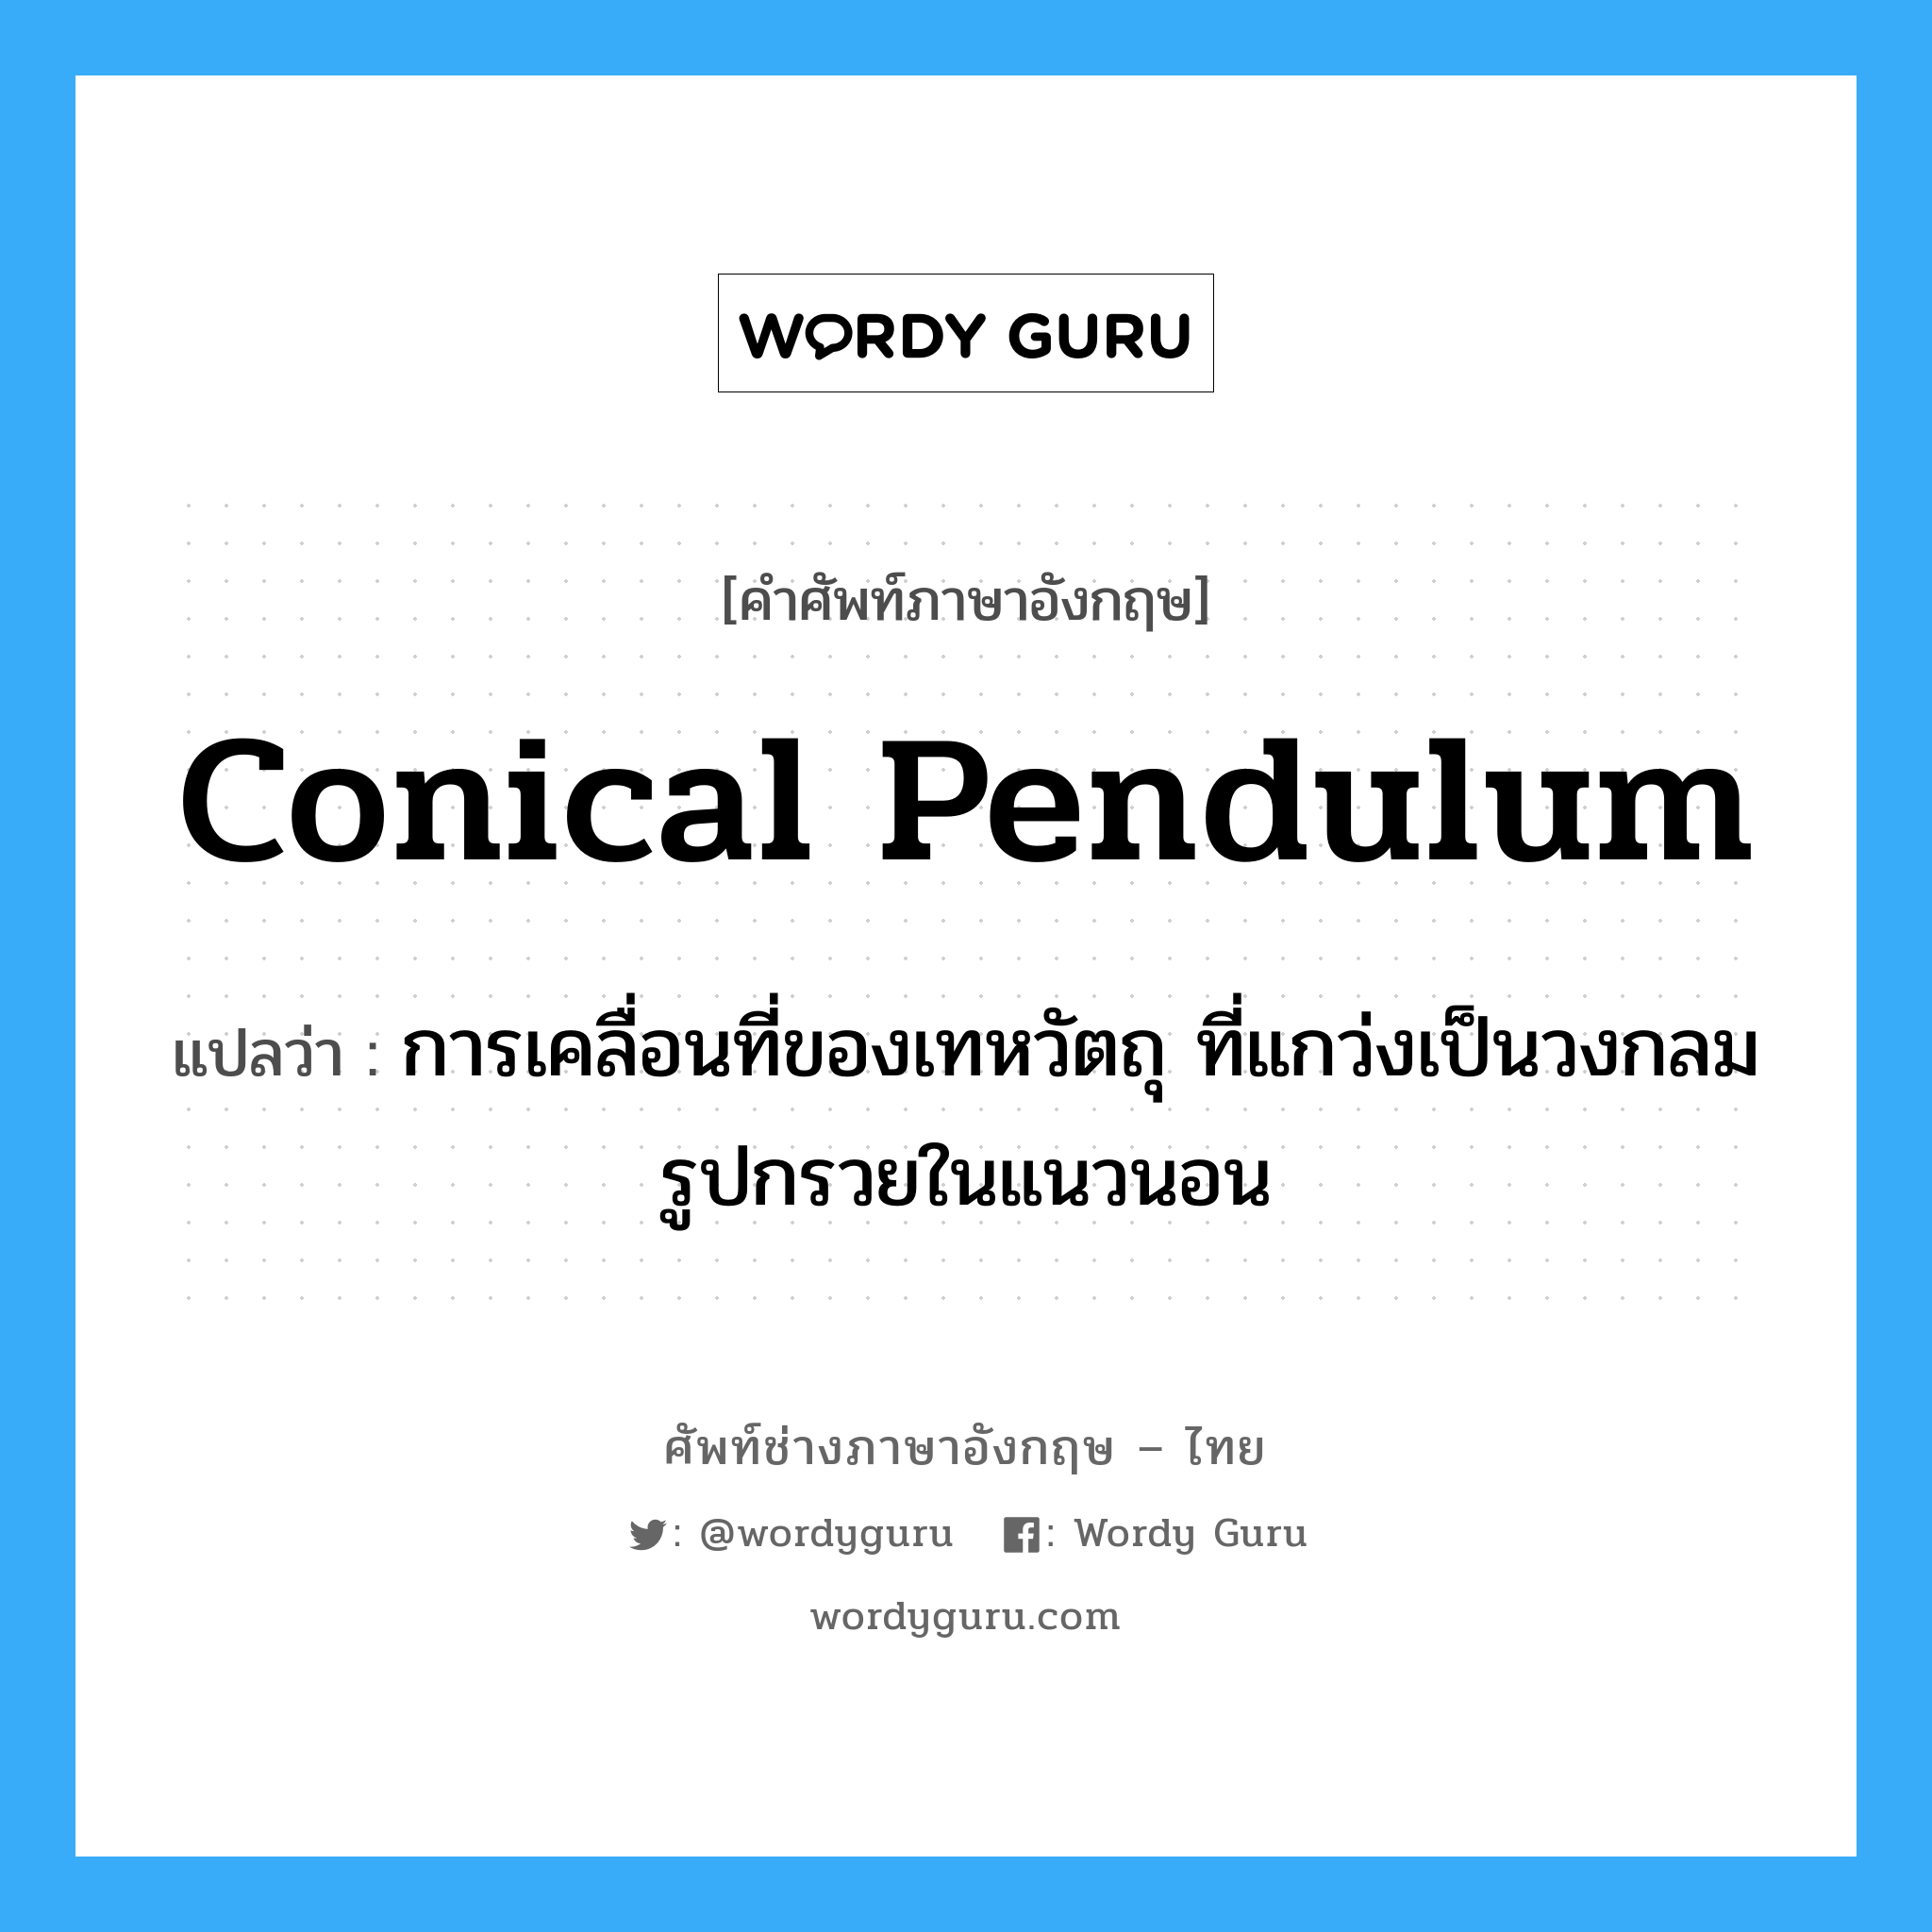 conical pendulum แปลว่า?, คำศัพท์ช่างภาษาอังกฤษ - ไทย conical pendulum คำศัพท์ภาษาอังกฤษ conical pendulum แปลว่า การเคลื่อนที่ของเทหวัตถุ ที่แกว่งเป็นวงกลมรูปกรวยในแนวนอน